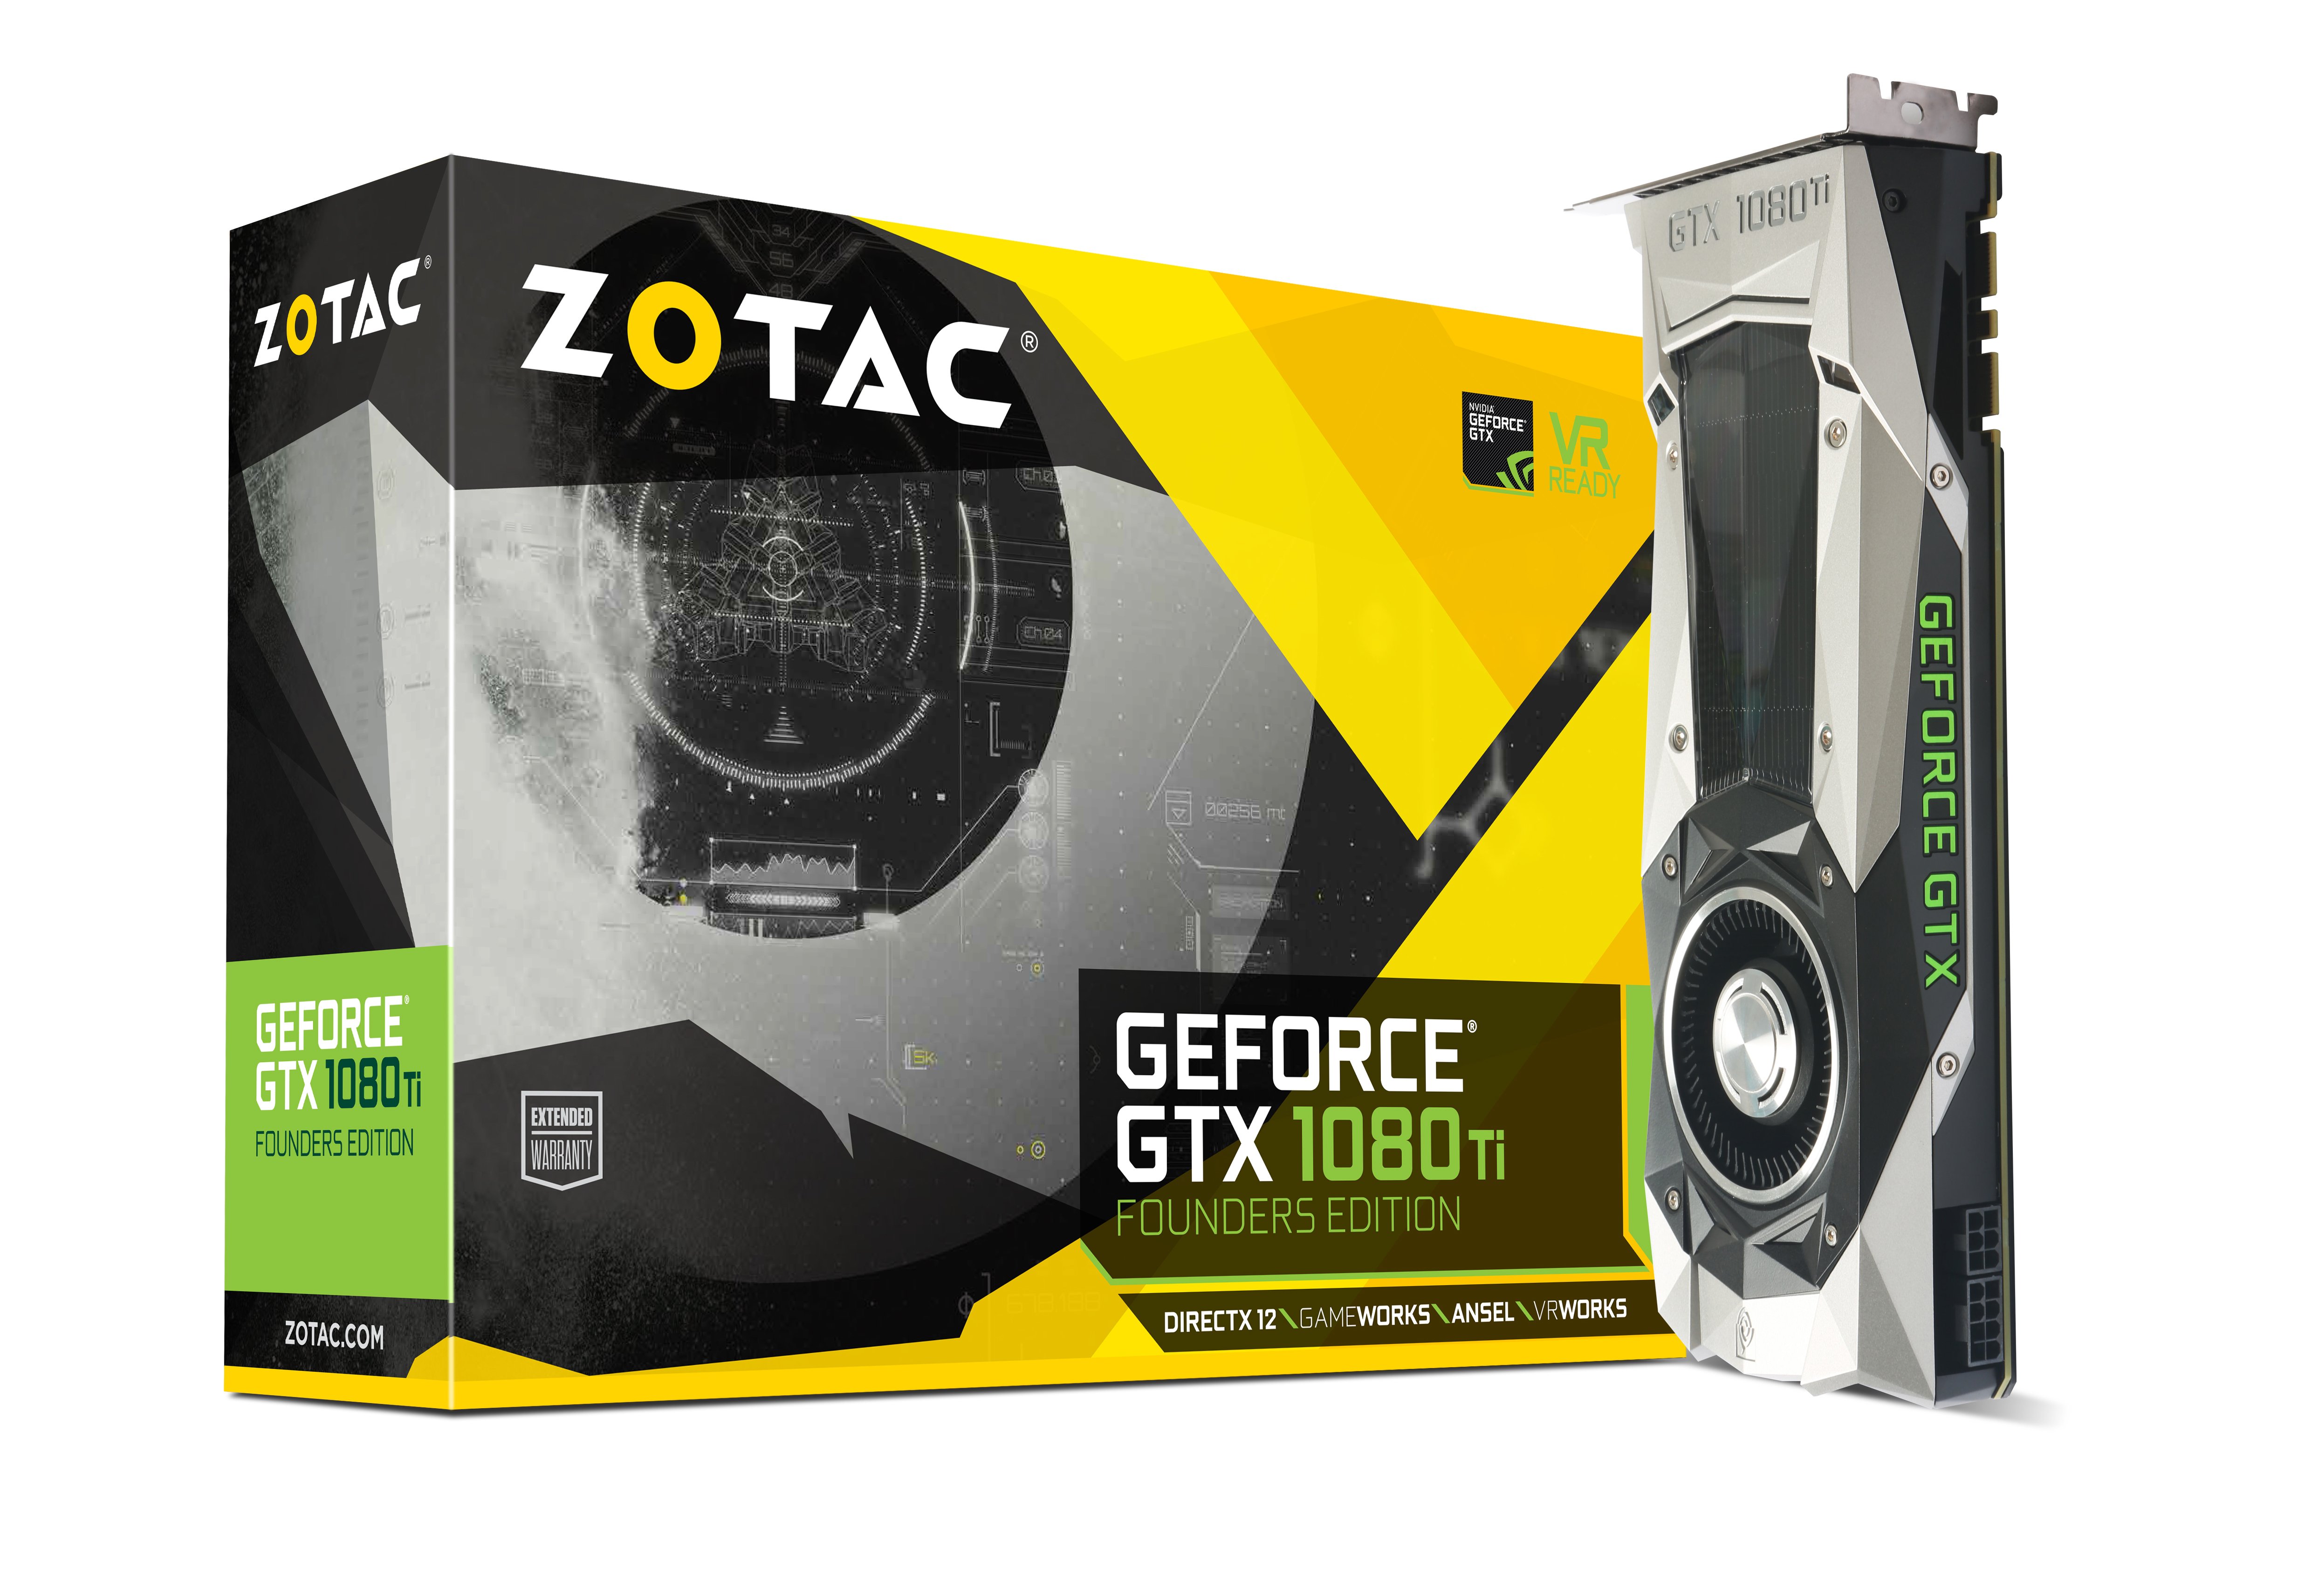 ZOTAC GeForce GTX 1080 Ti FounderEdition